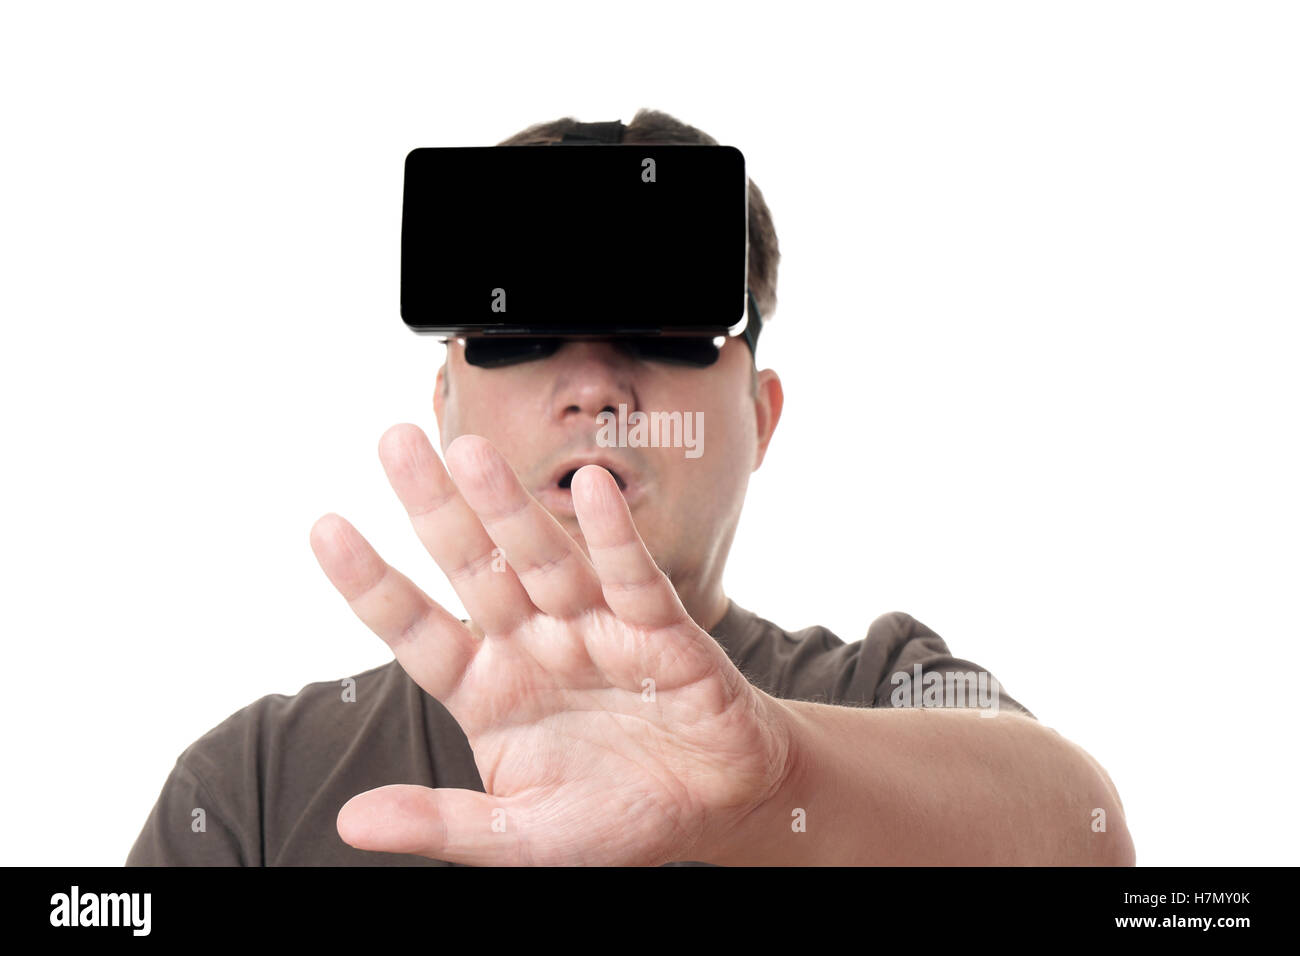 Homme portant un casque de réalité virtuelle VR reaching out Banque D'Images